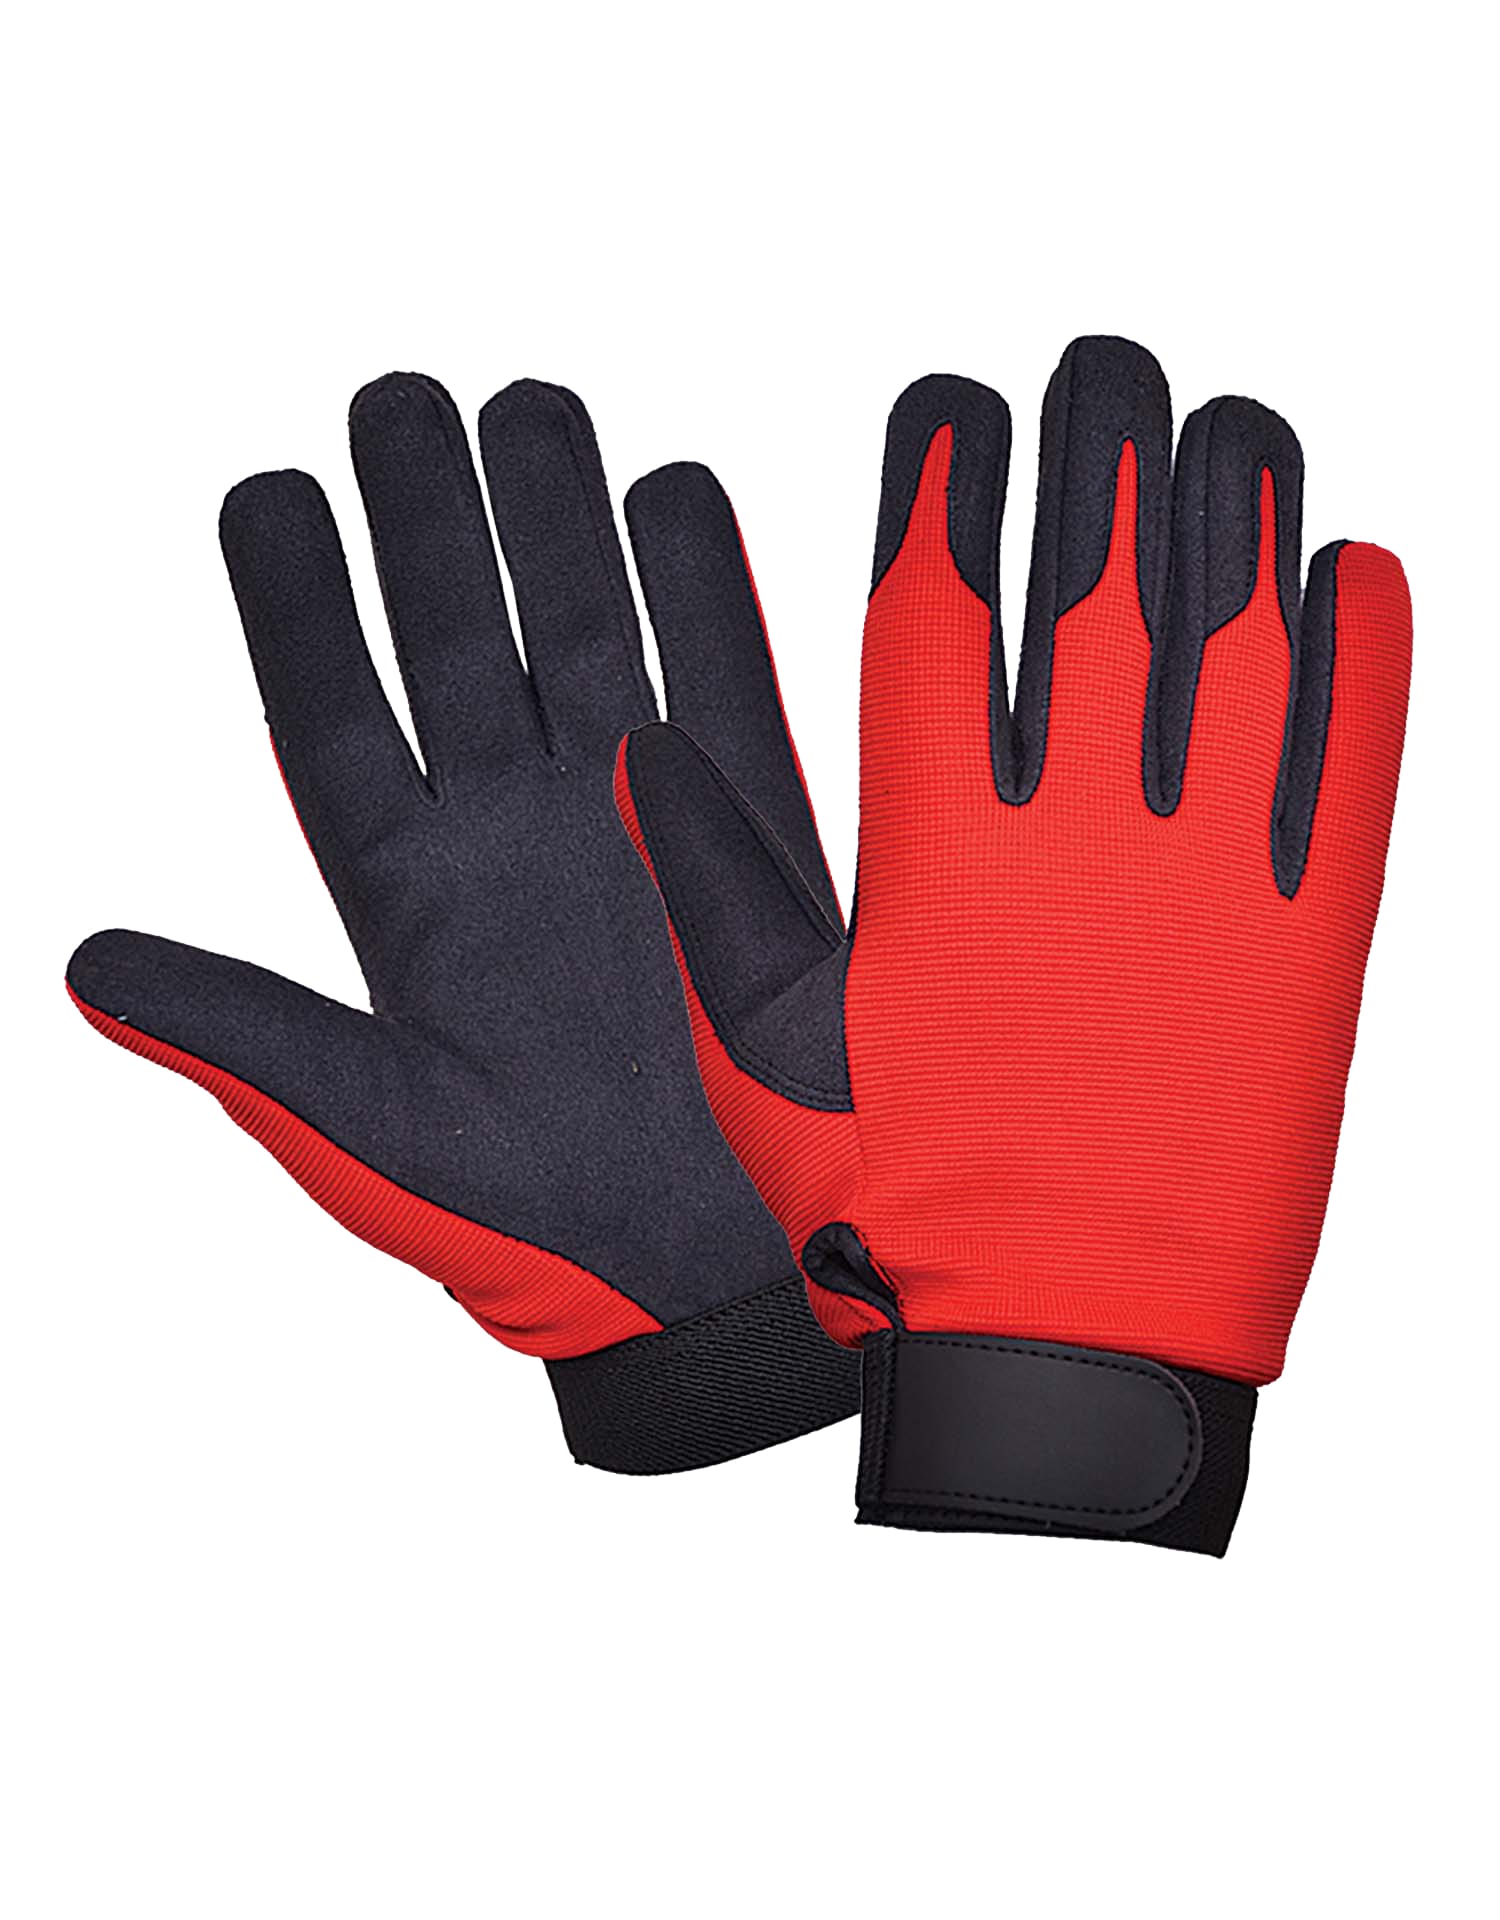 Men's Full Finger Mechanic Gloves